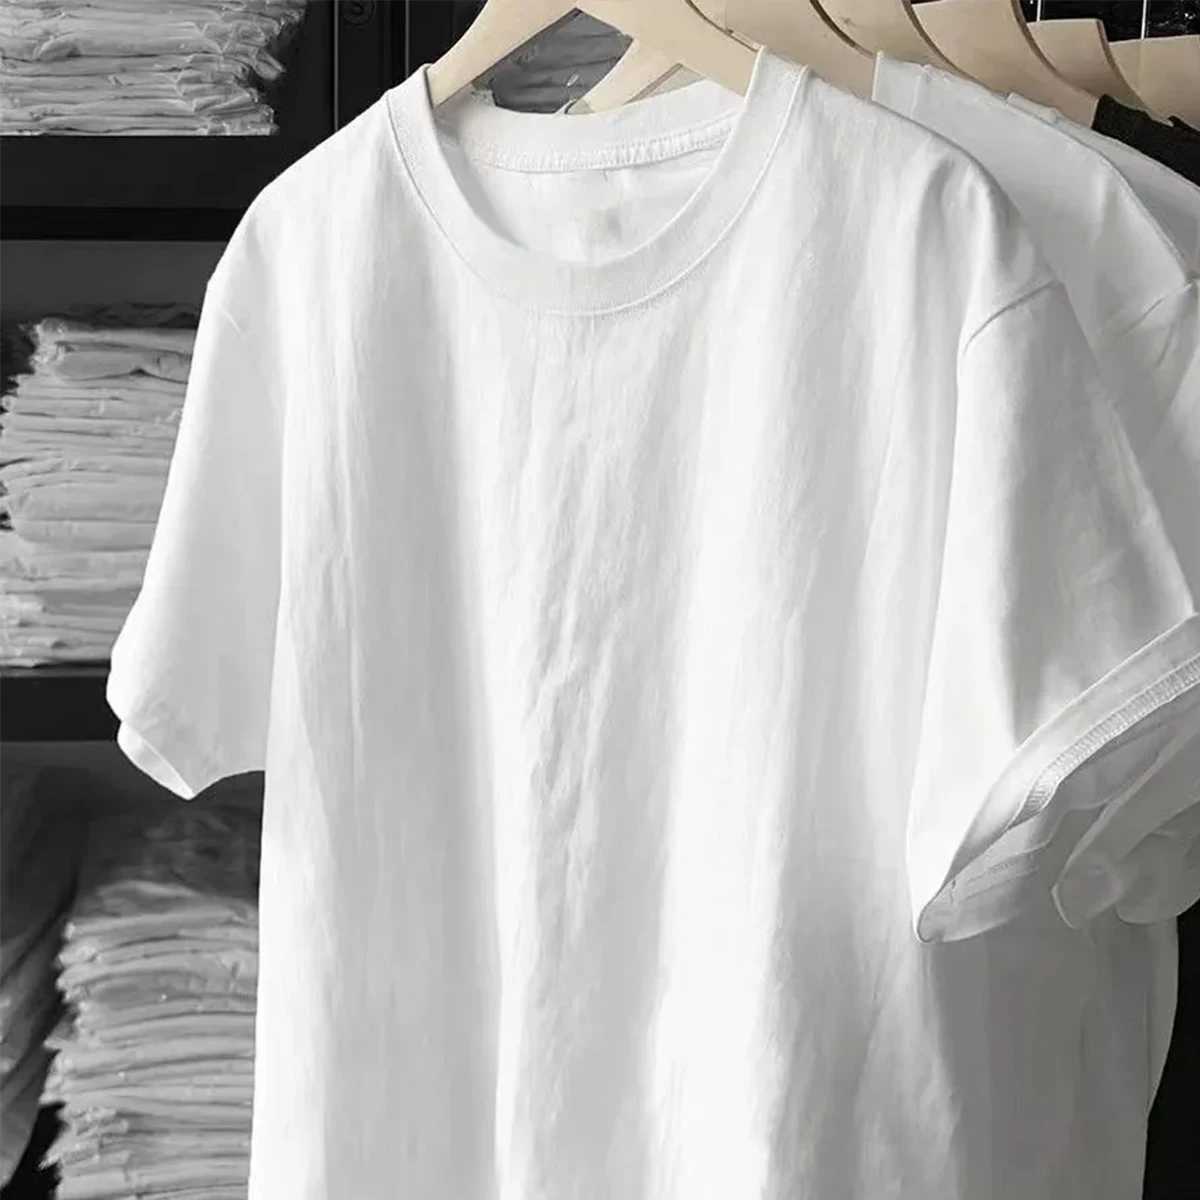 Homens camisetas 220 Gsm 100% algodão sólido camiseta verão moda masculina camiseta manga curta clássico tee mens hip hop oversized tops t masculino